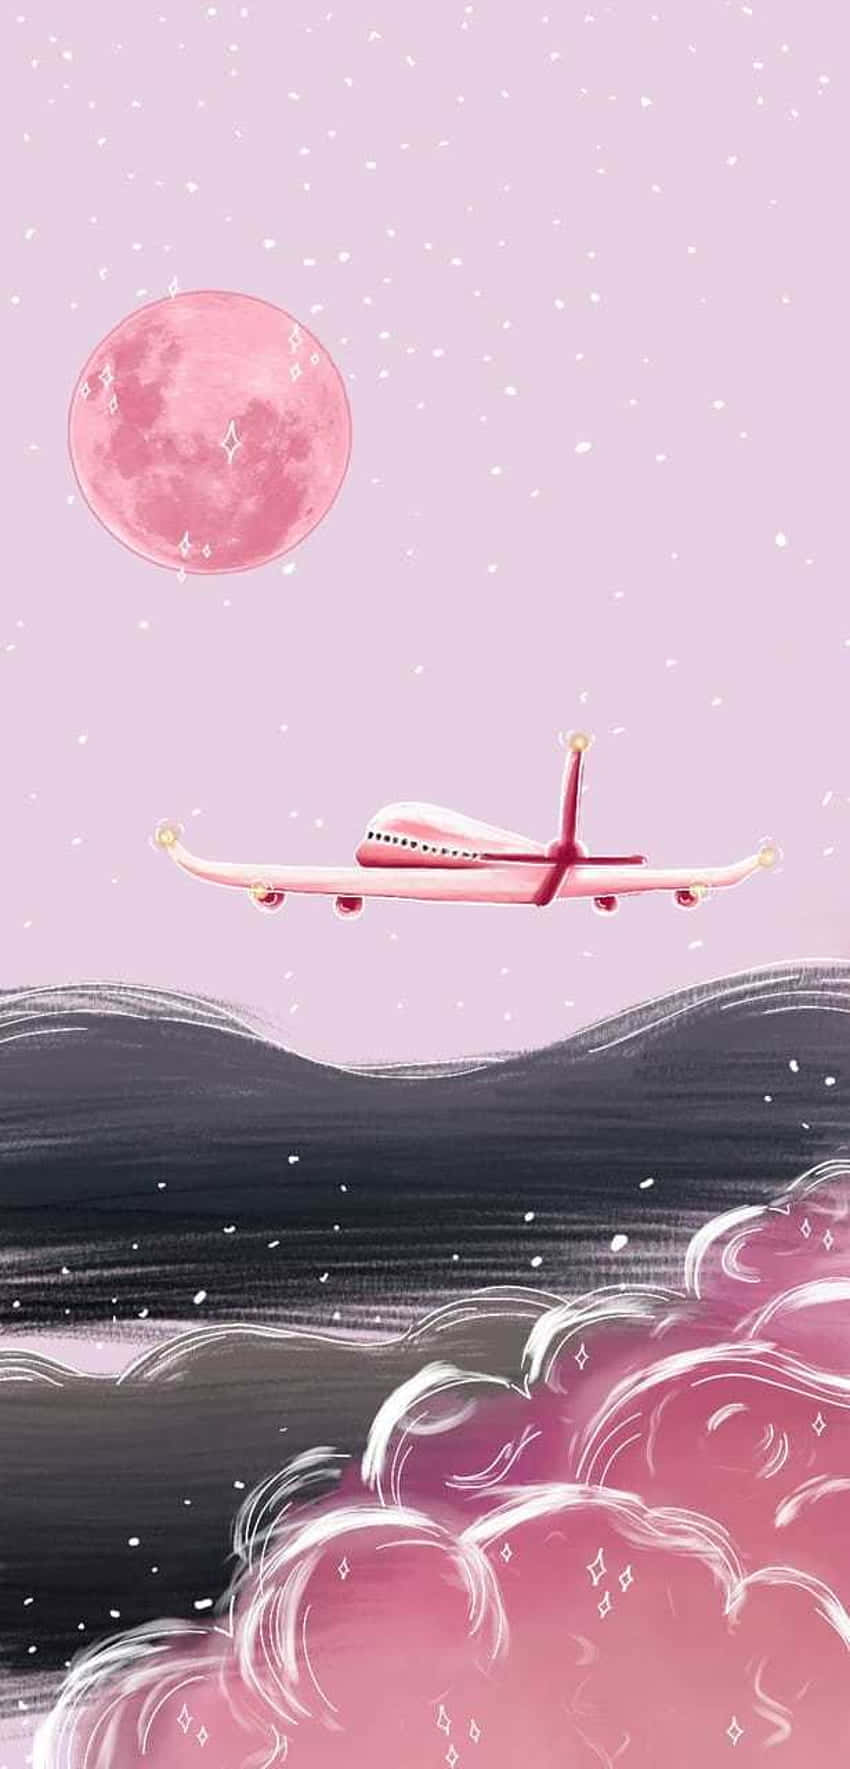 Sving højt over skyerne i dette majestætiske pink fly Wallpaper